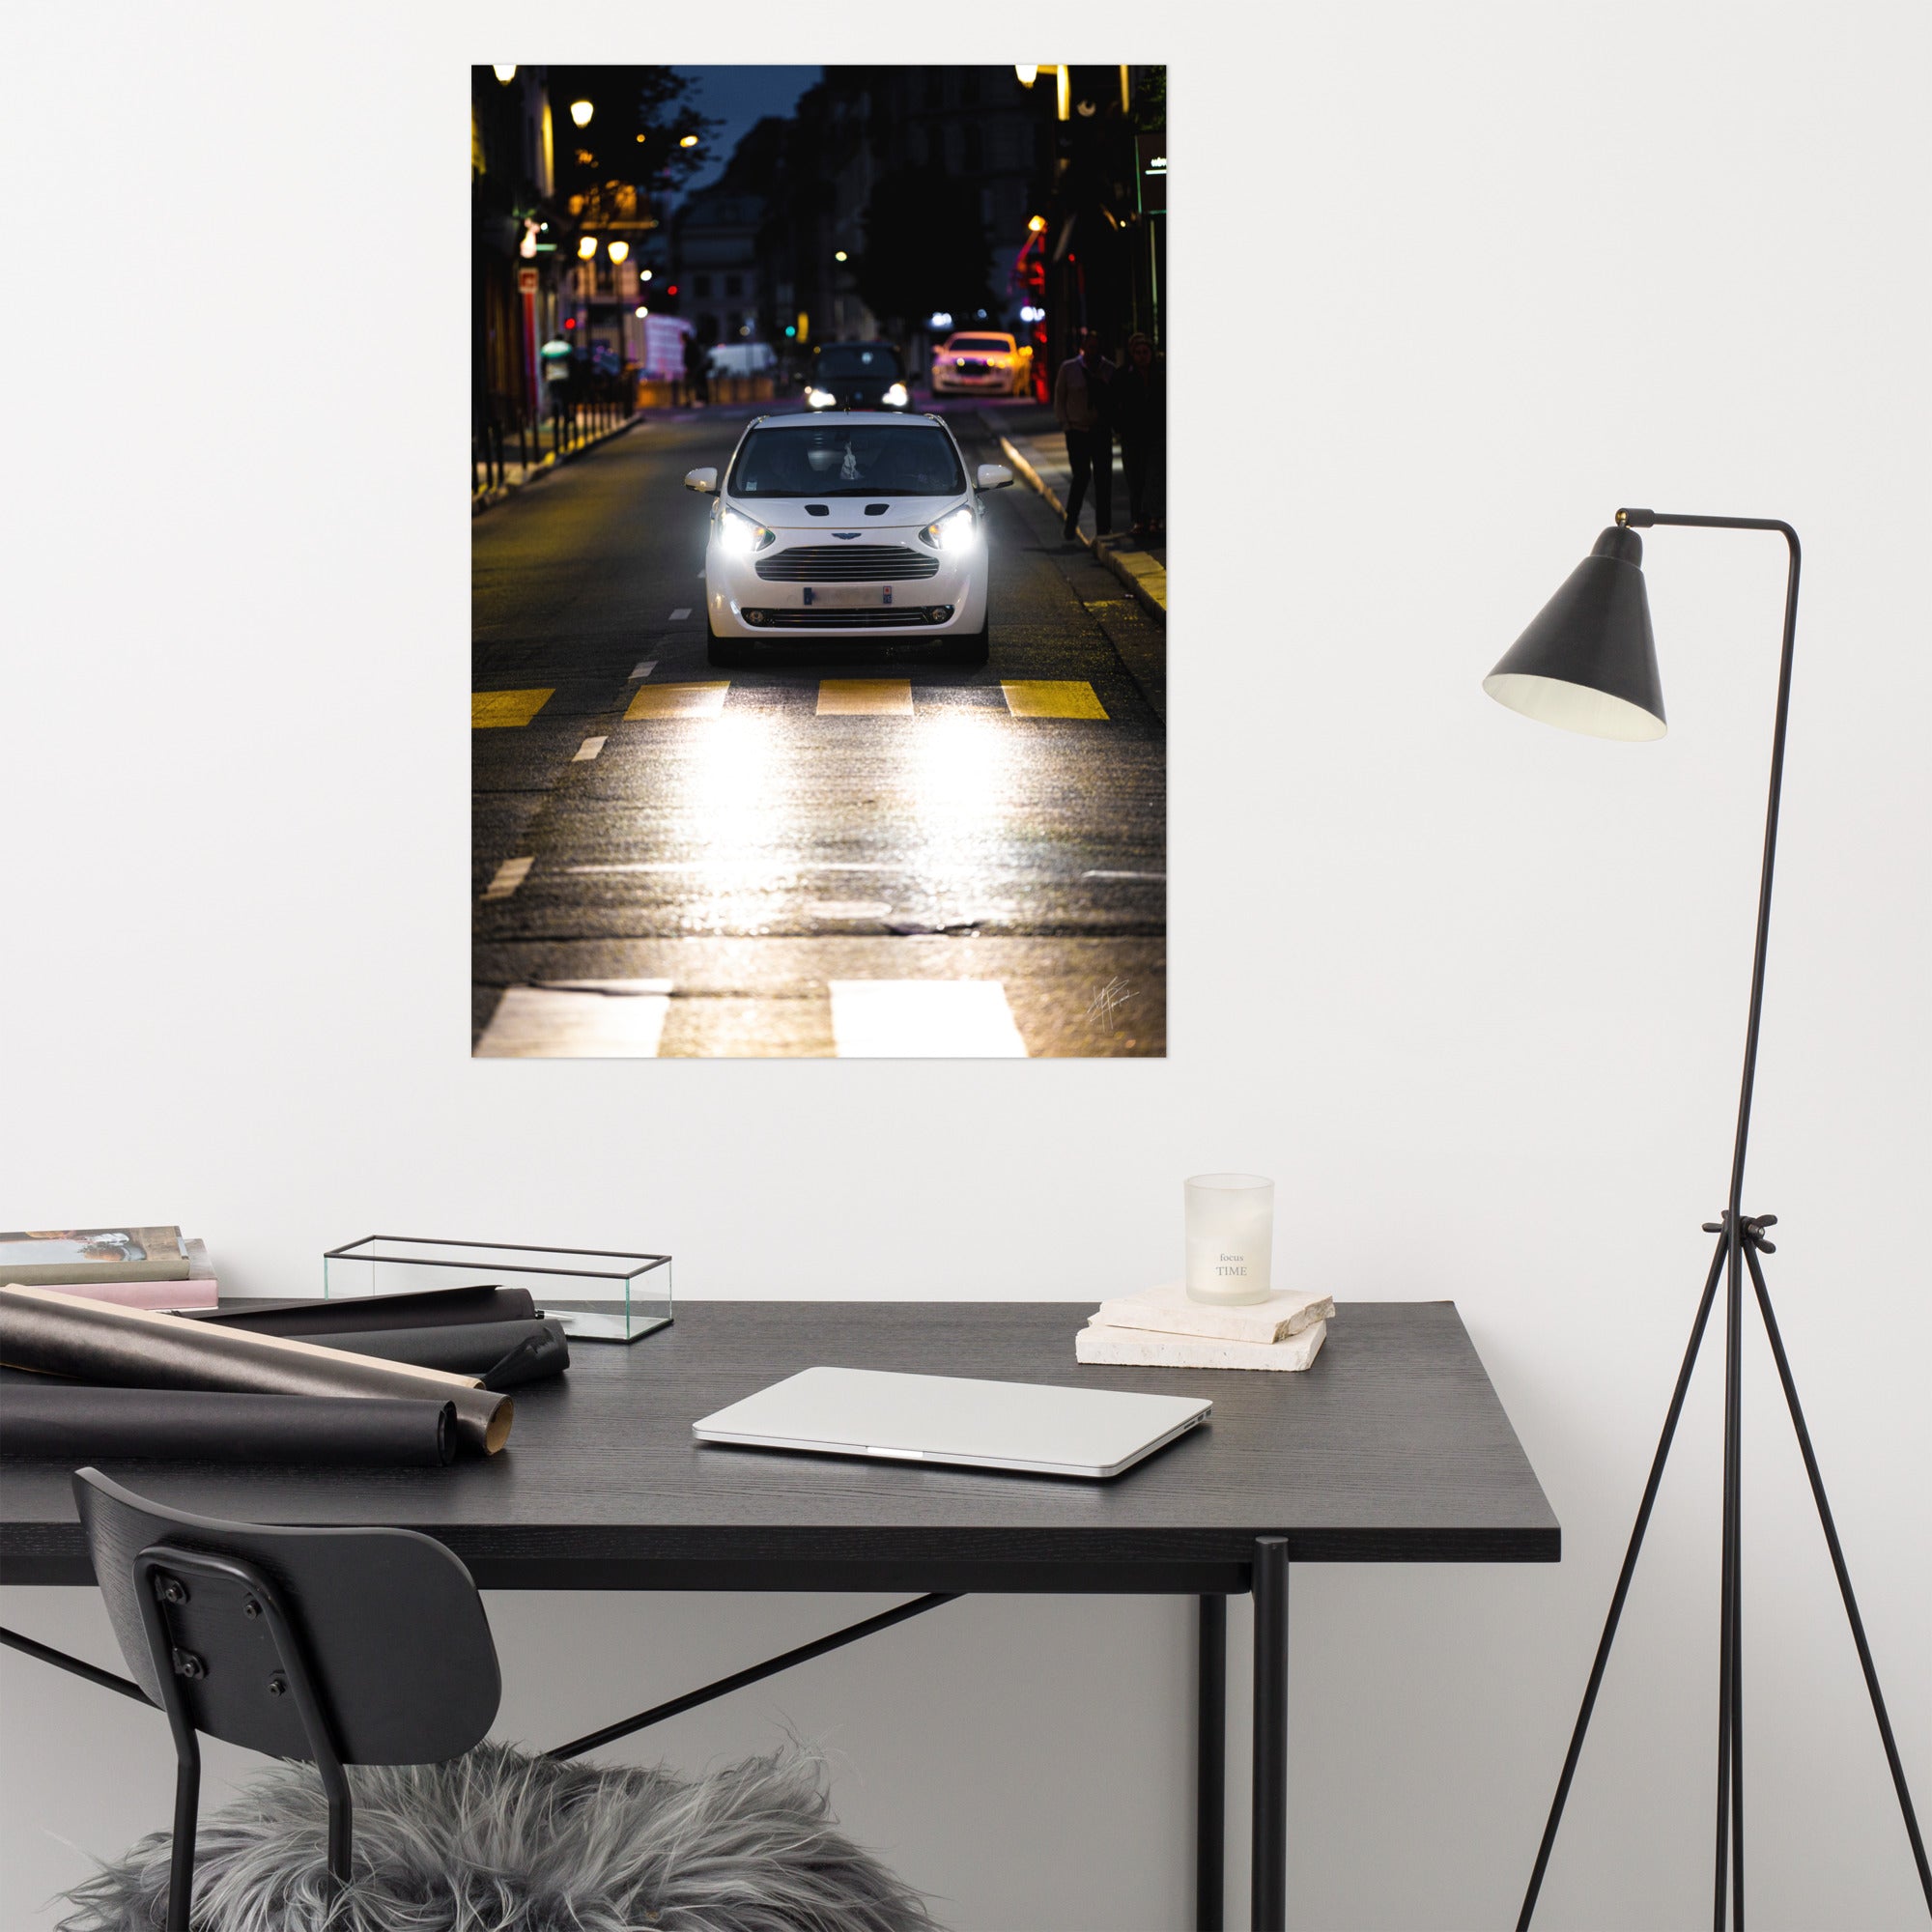 Vue de l'Aston Martin Cygnet, voiture de ville élégante, avec son design raffiné et son logo emblématique, positionnée contre un arrière-plan neutre pour mettre en valeur sa silhouette distincte.